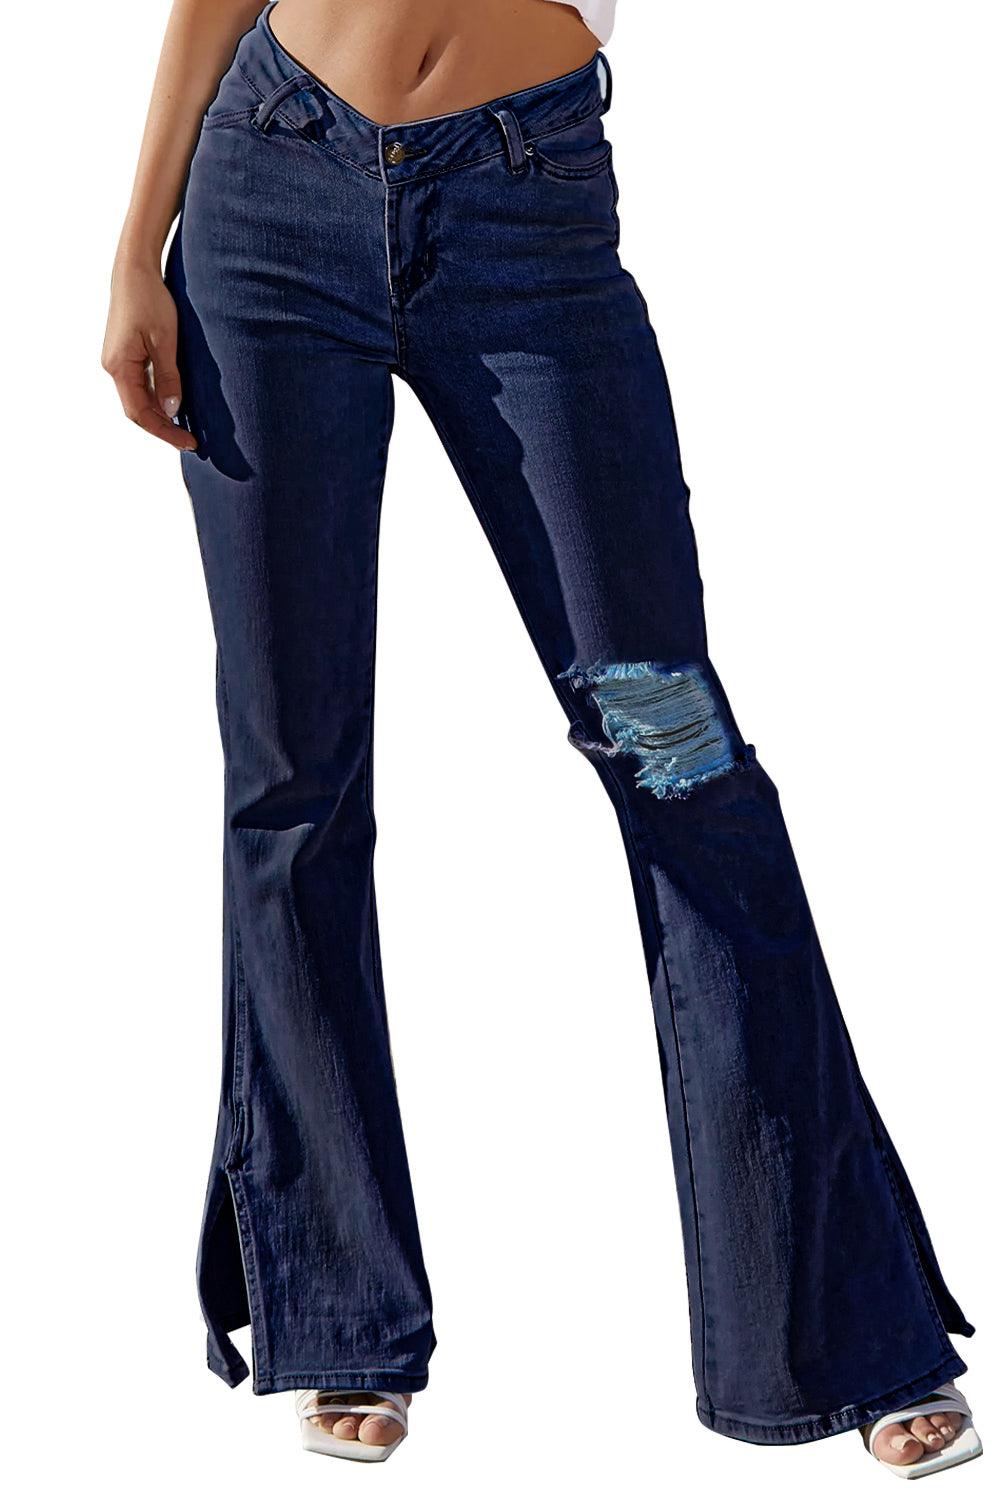 Ripped Slit Legs Flare Jeans - L & M Kee, LLC